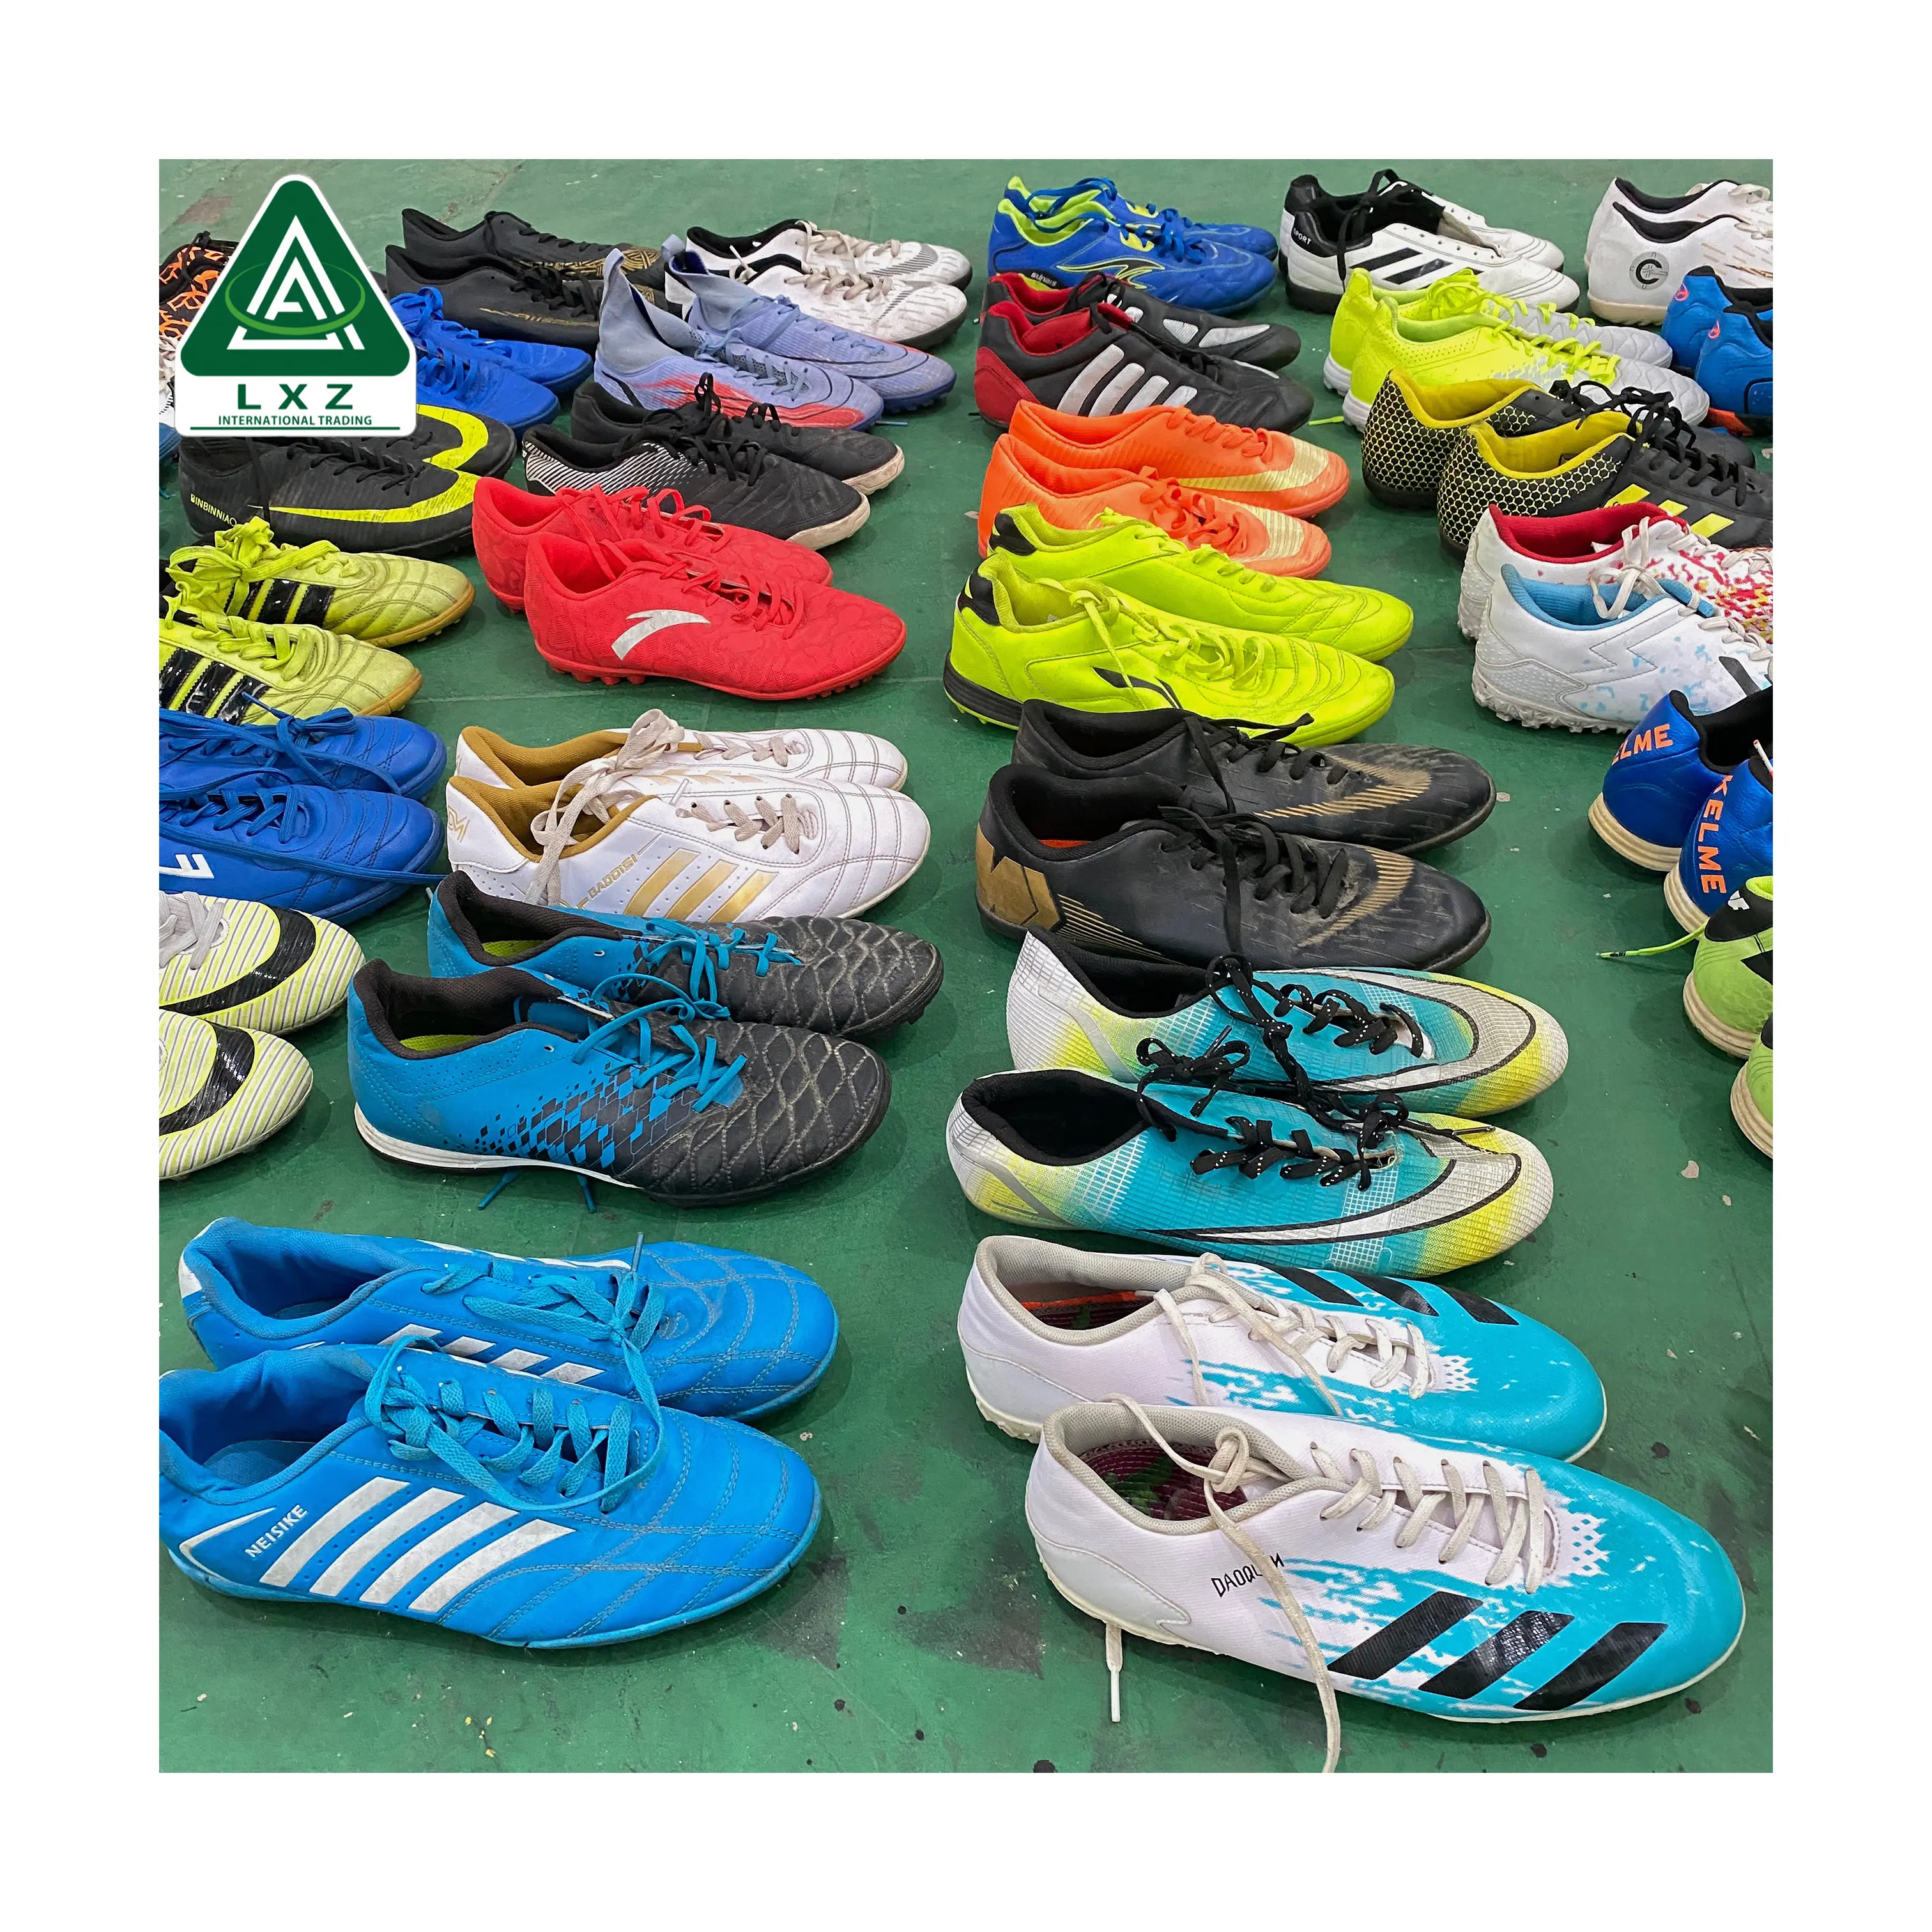 Zapatos usados de China zapatos de segunda mano en pacas zapatos de fútbol chinos usados al por mayor